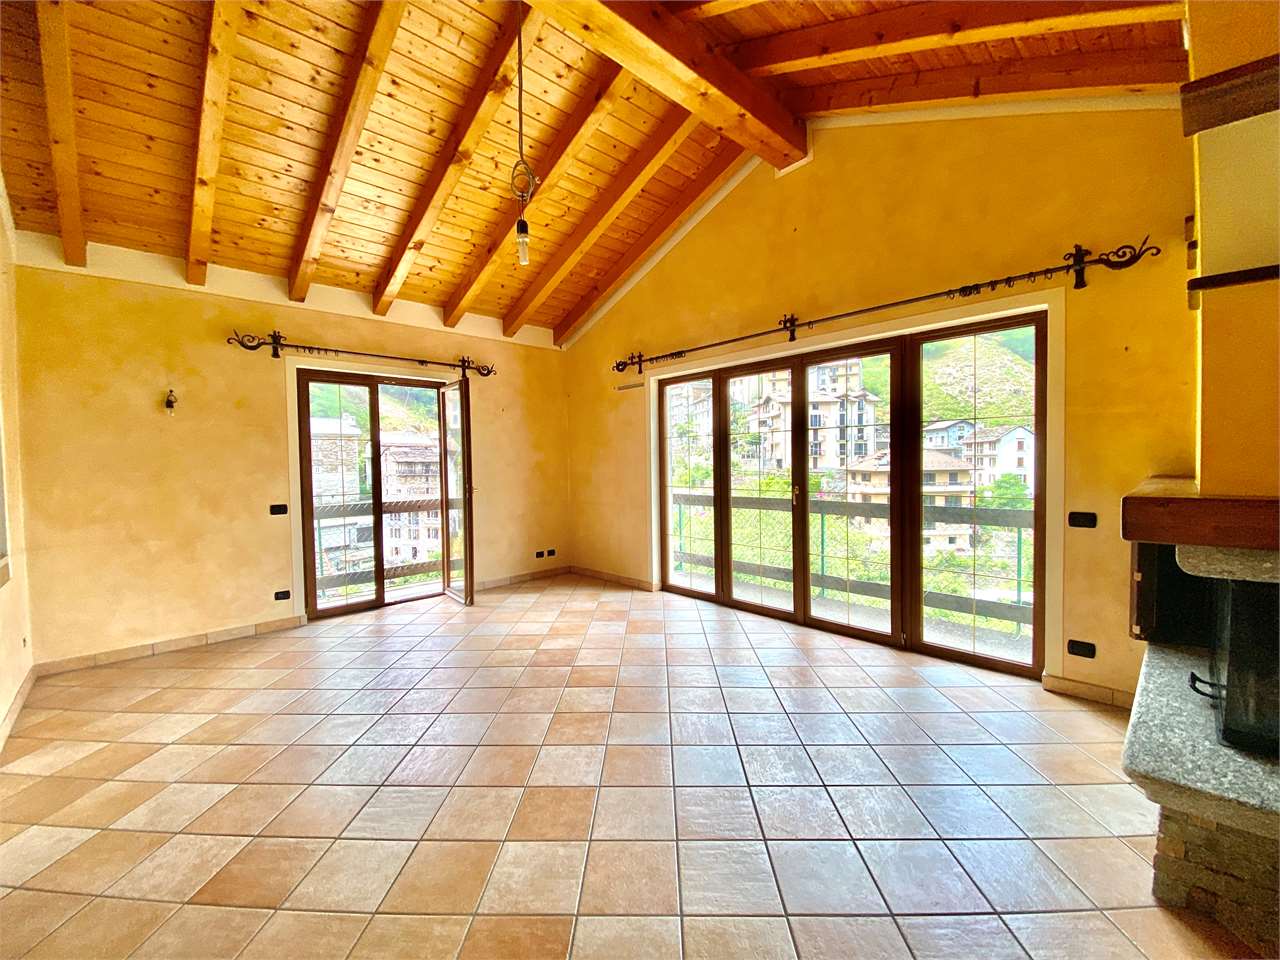 Villa in vendita a Gurro, 4 locali, prezzo € 135.000 | PortaleAgenzieImmobiliari.it